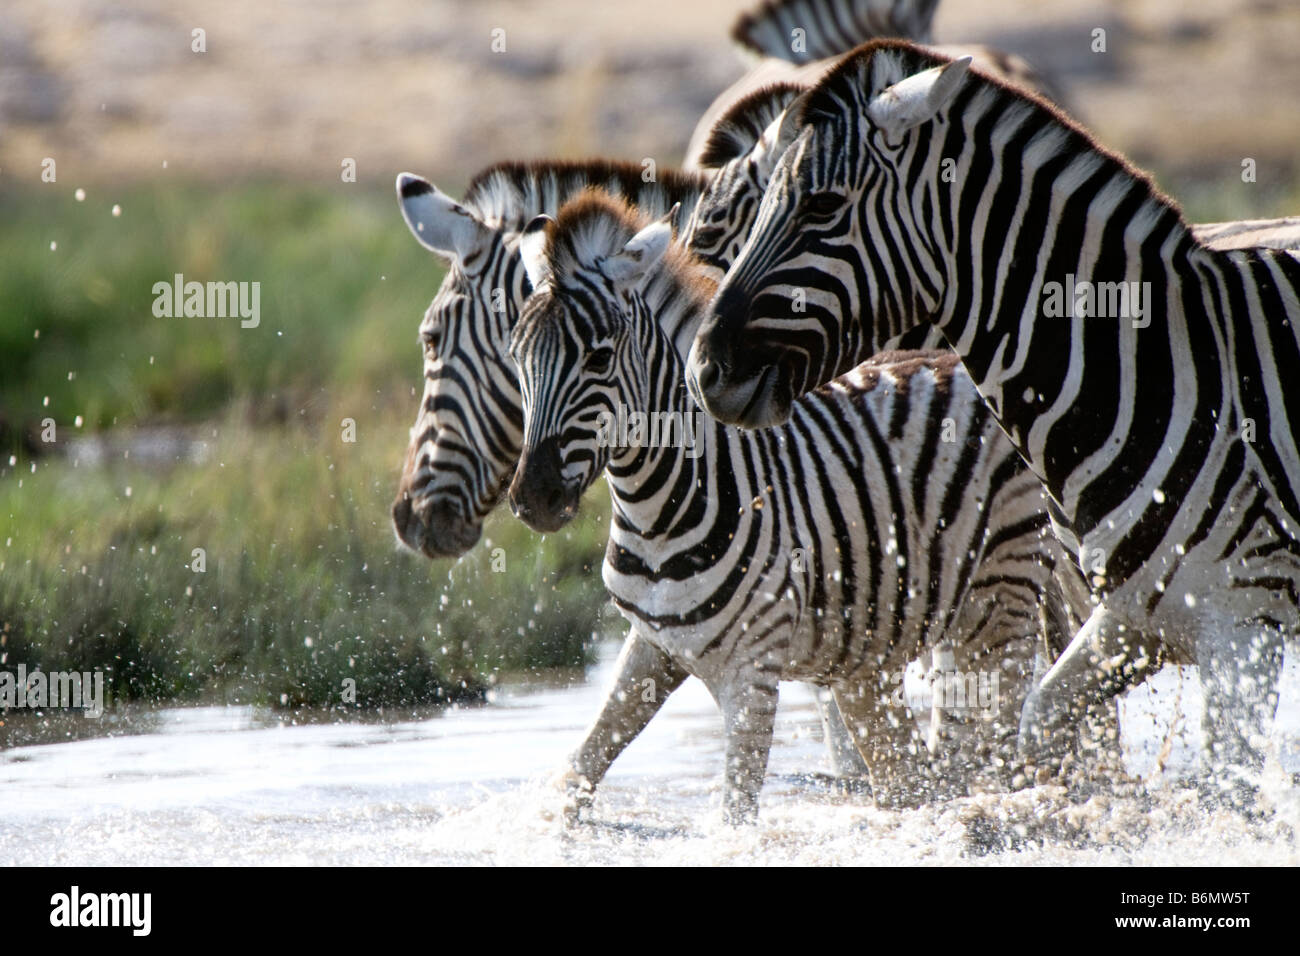 Plains Zebras Enjoying Water at Etosha National Park, Namibia Stock Photo